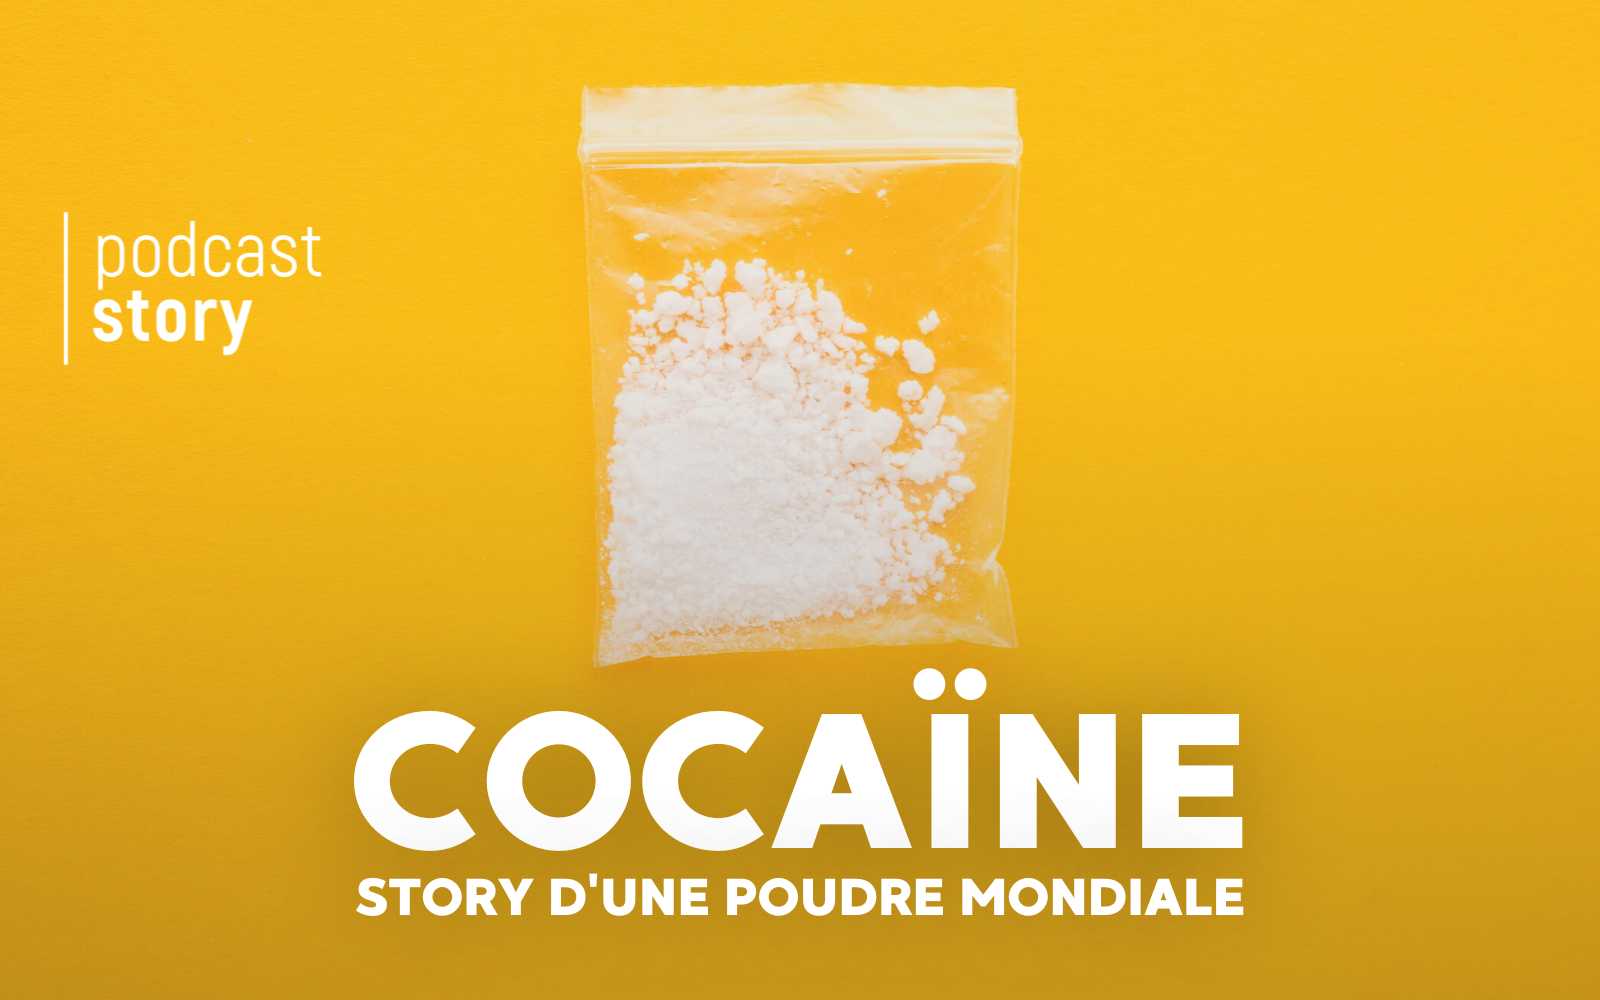 Cocaïne, Story d’une poudre mondiale